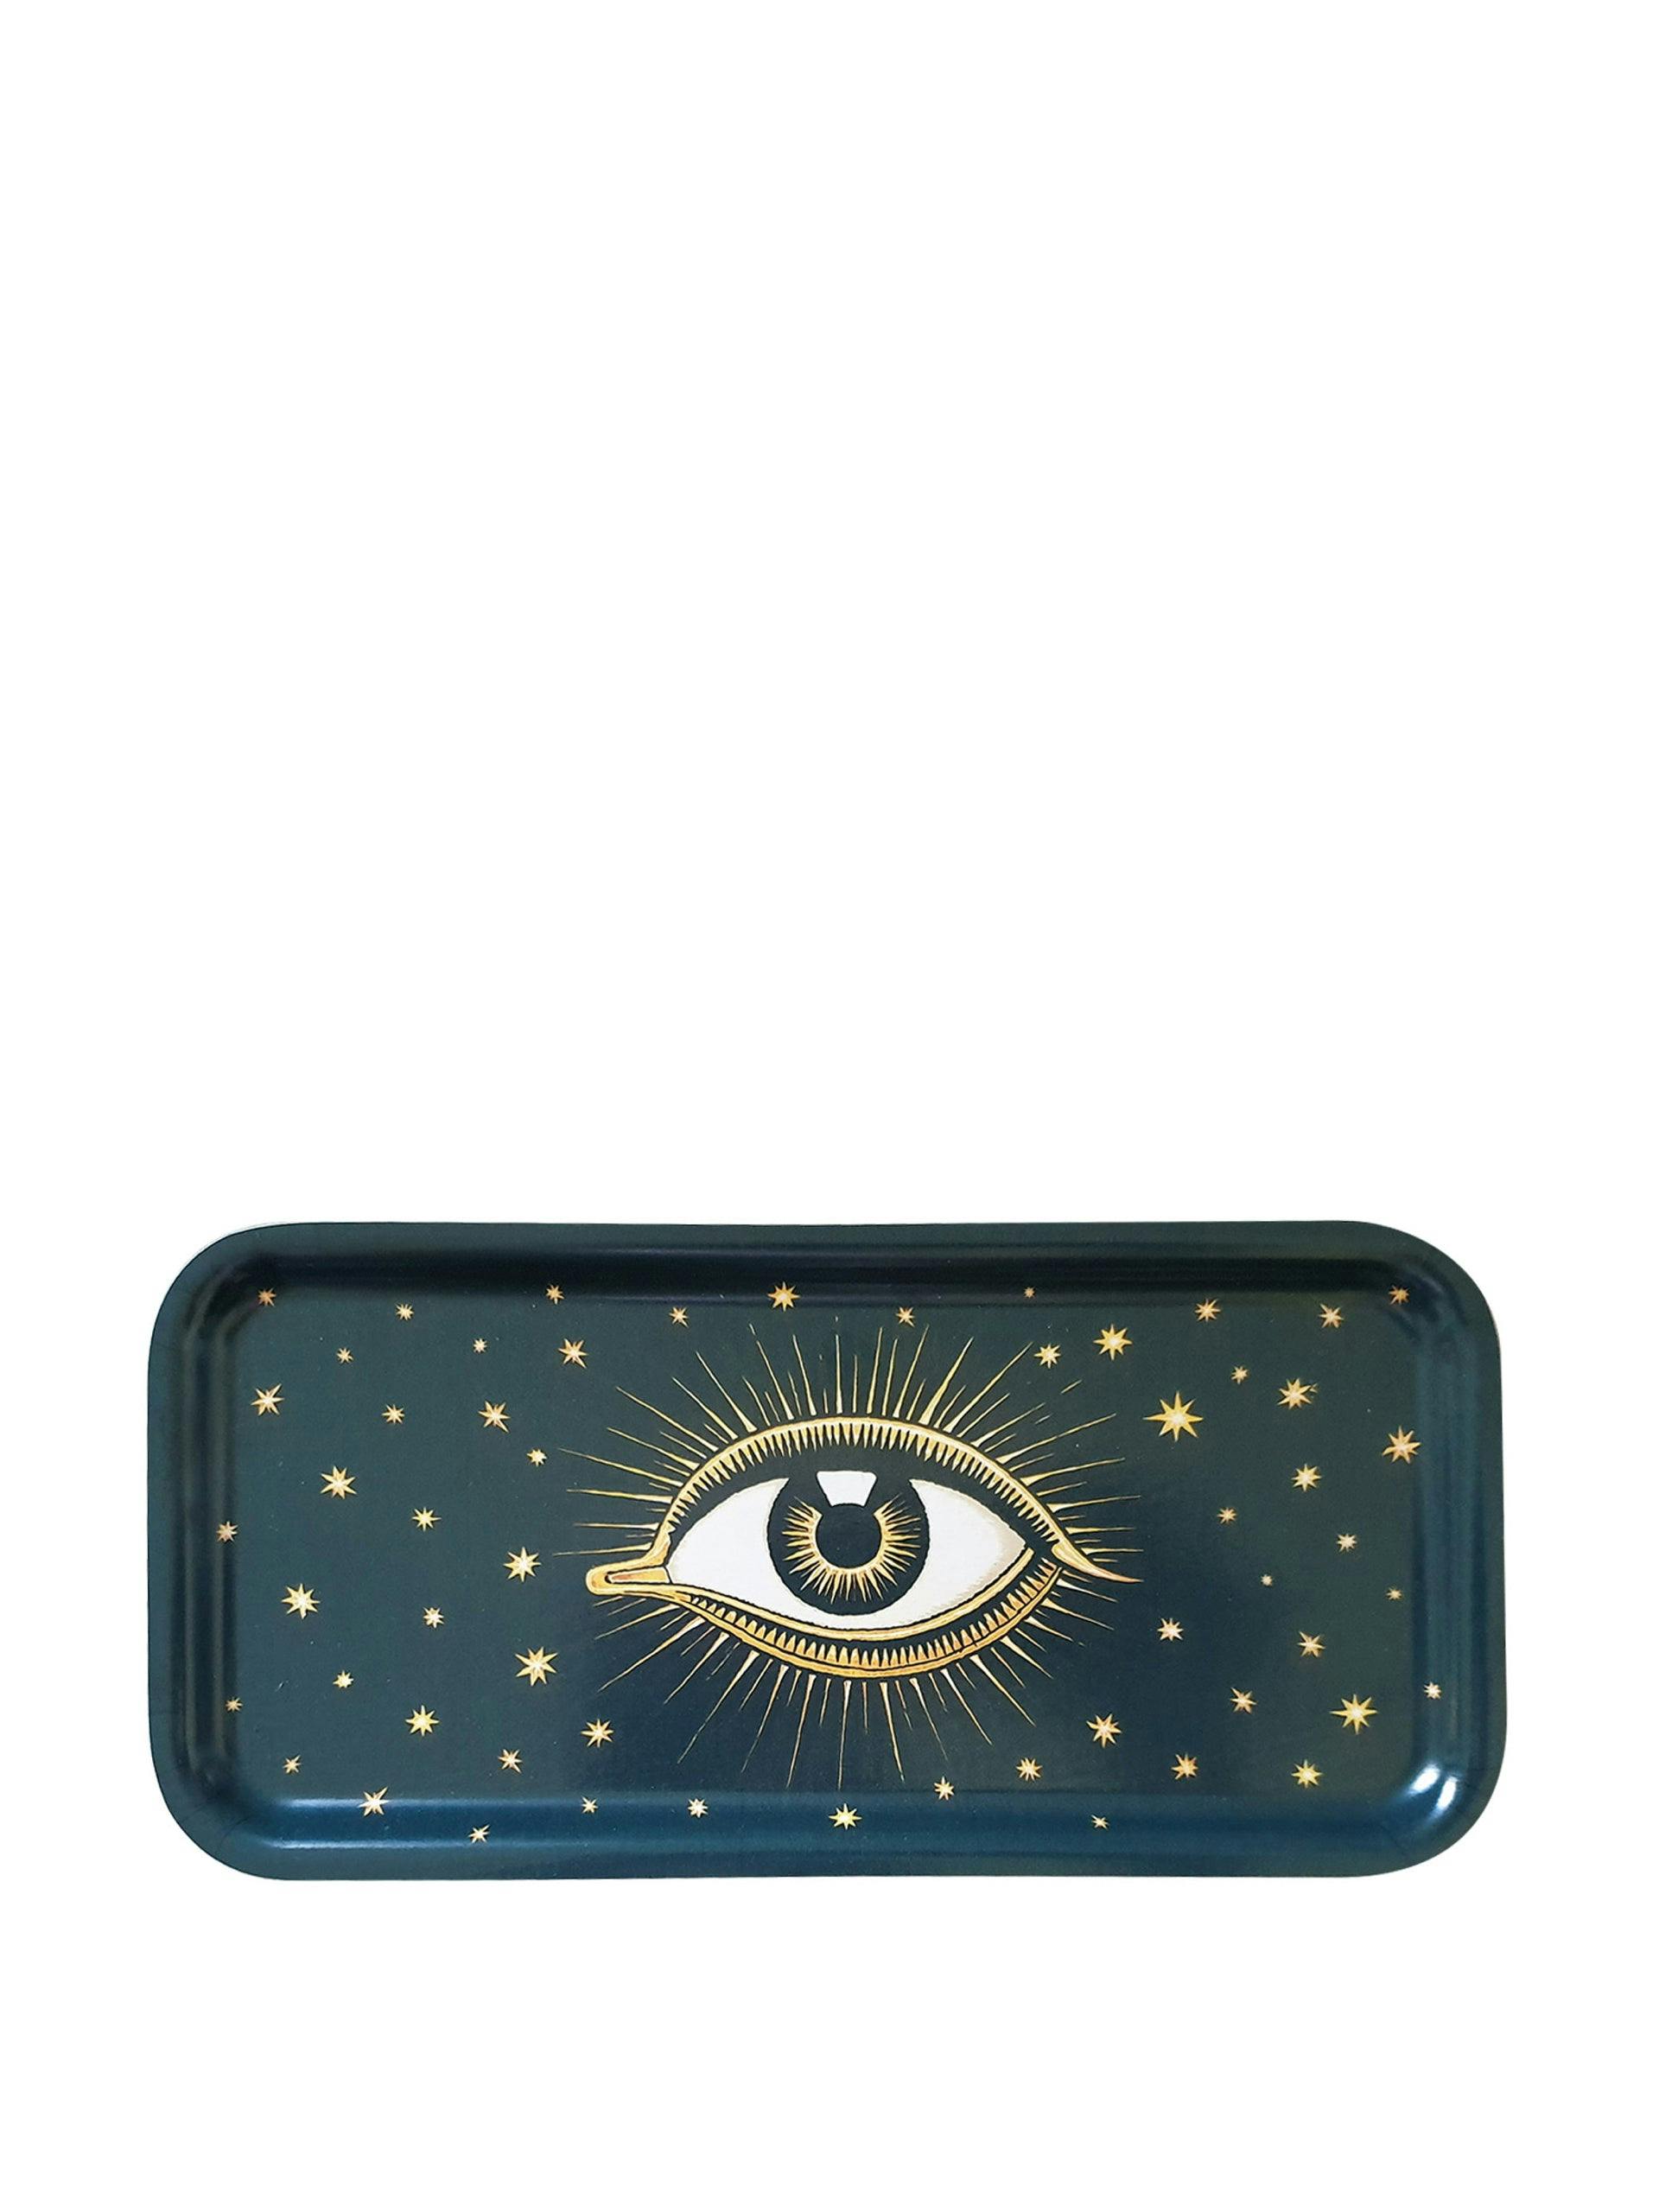 Blue mystical eye wooden tray